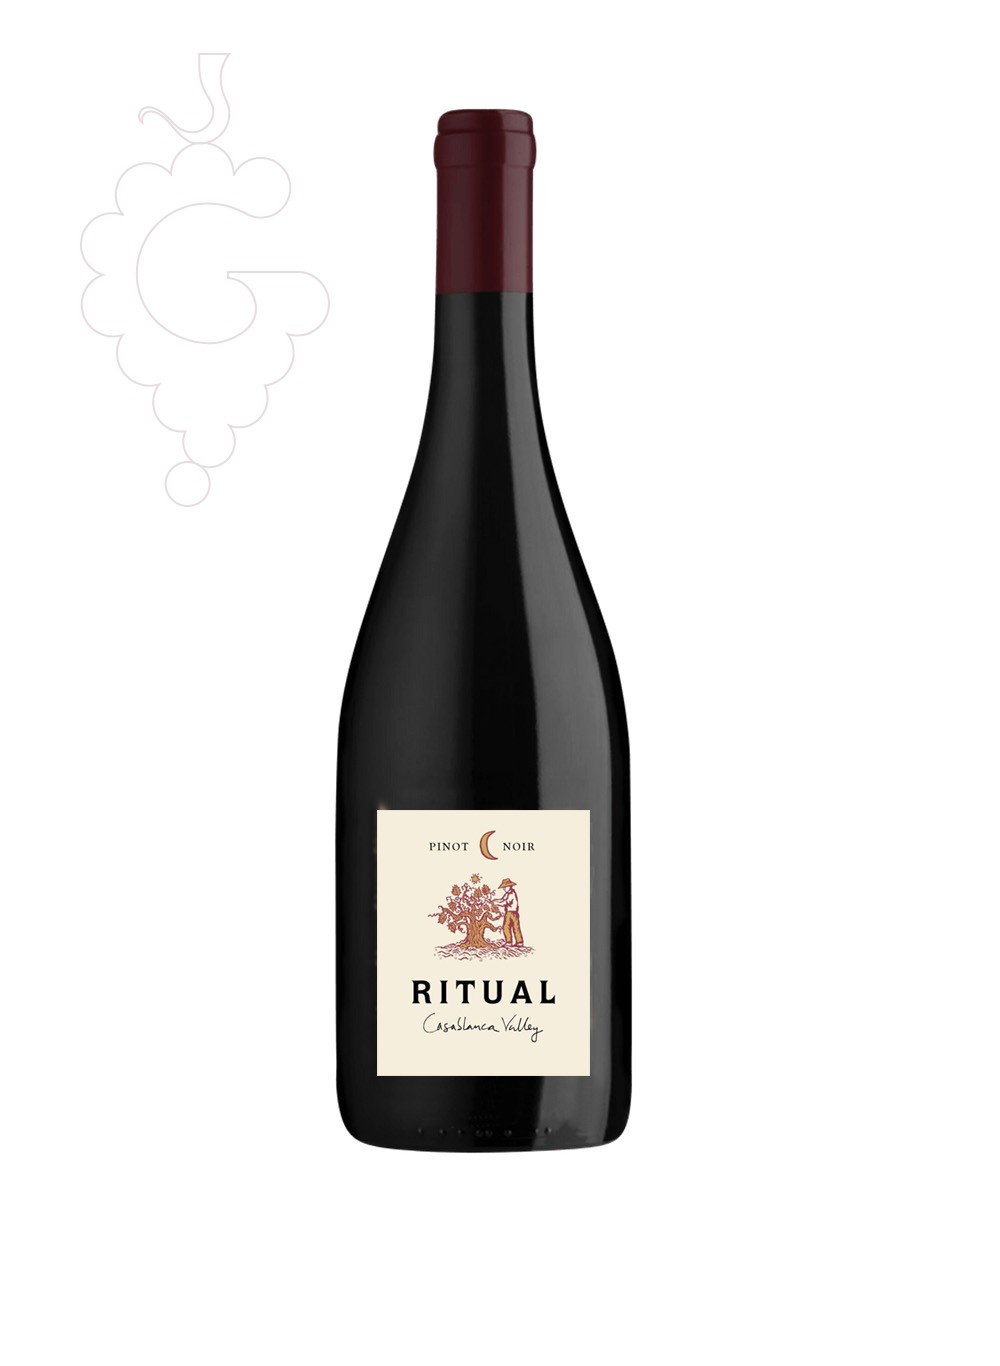 Ritual Pinot Noir 2019